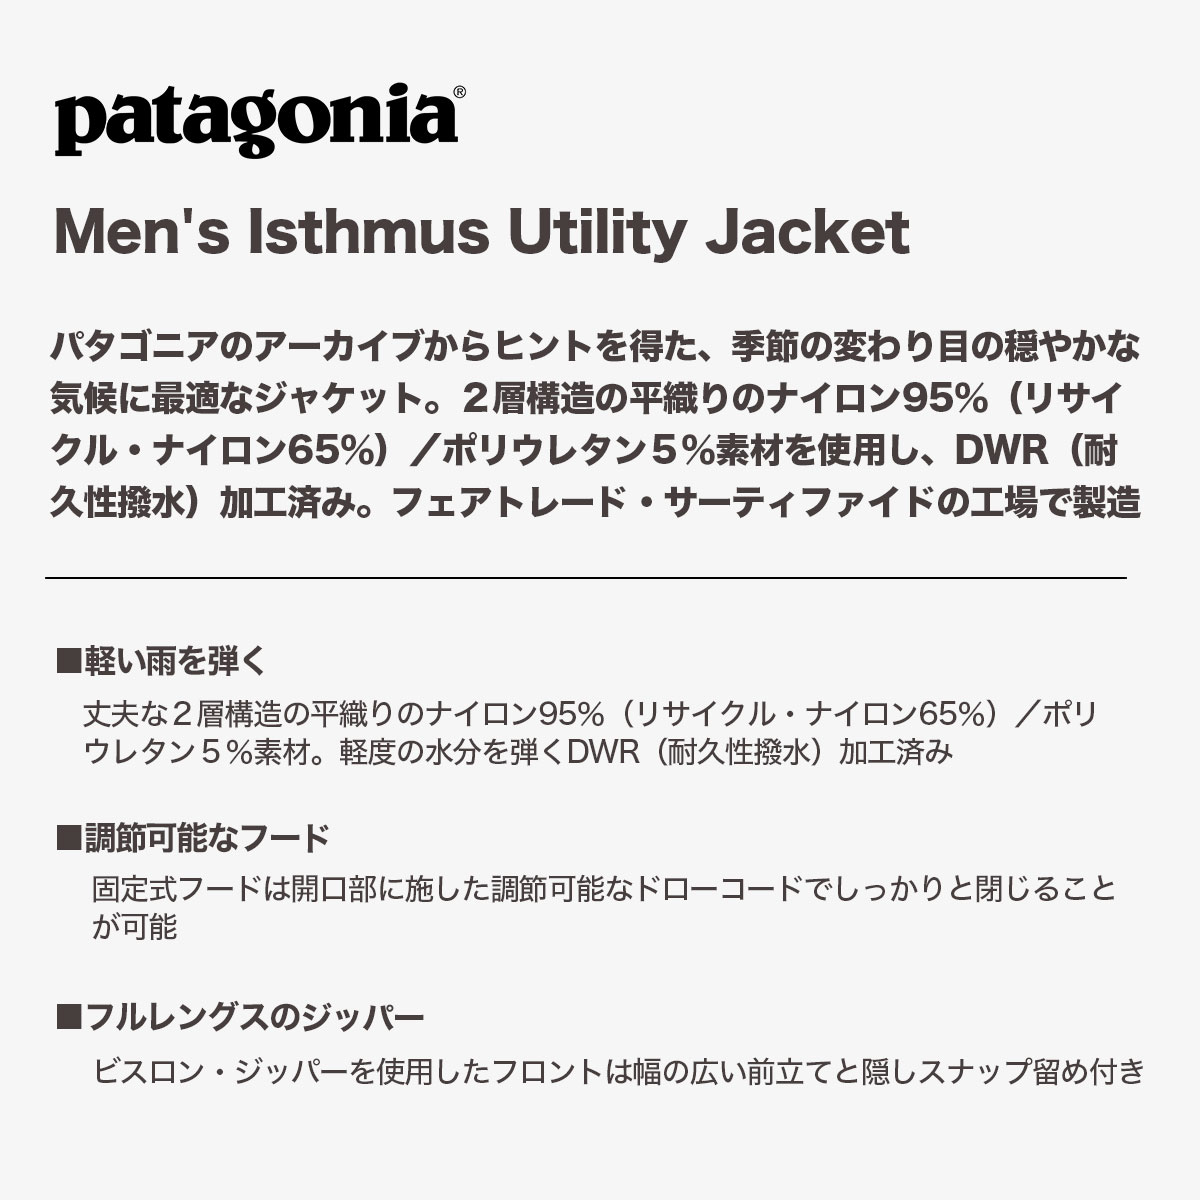 【新品未使用】 patagonia パタゴニア イスマス ユーティリティ ジャケット MENS ISTHMUS UTILITY JACKET 26506 【XLサイズ/WAVY BLUE】